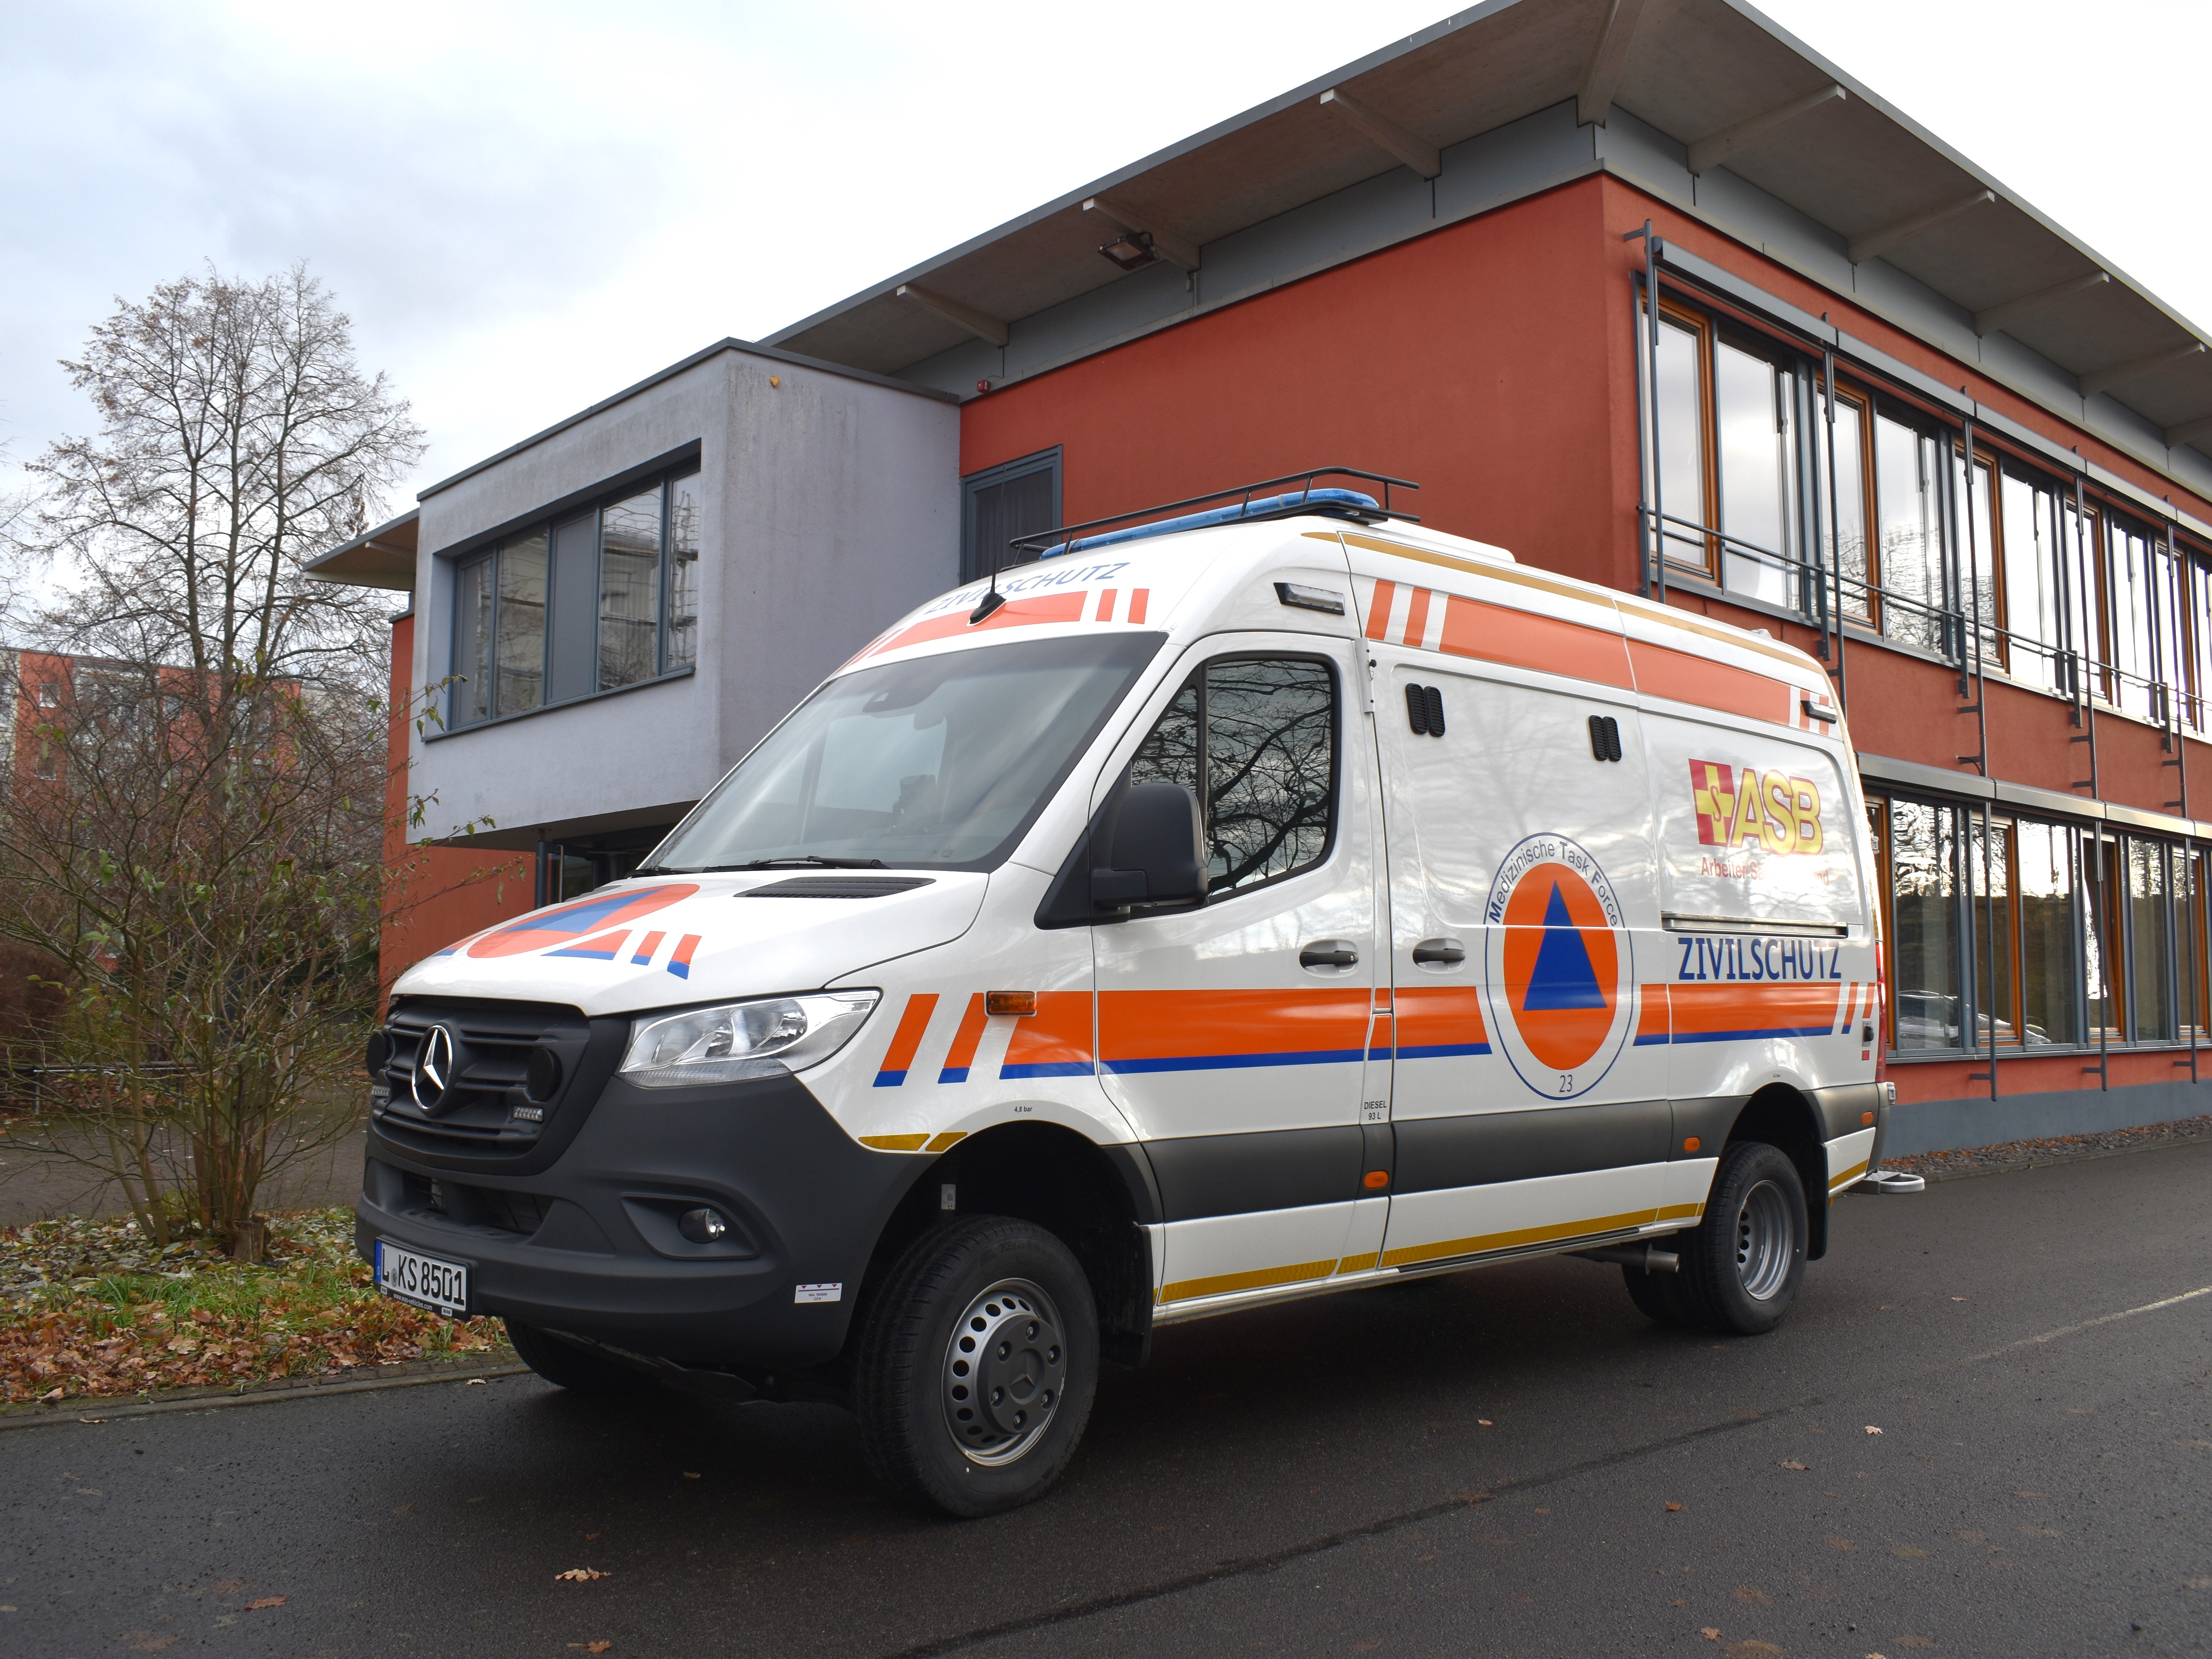 Neuer Krankentransportwagen für den Zivilschutz wurde eingeweiht